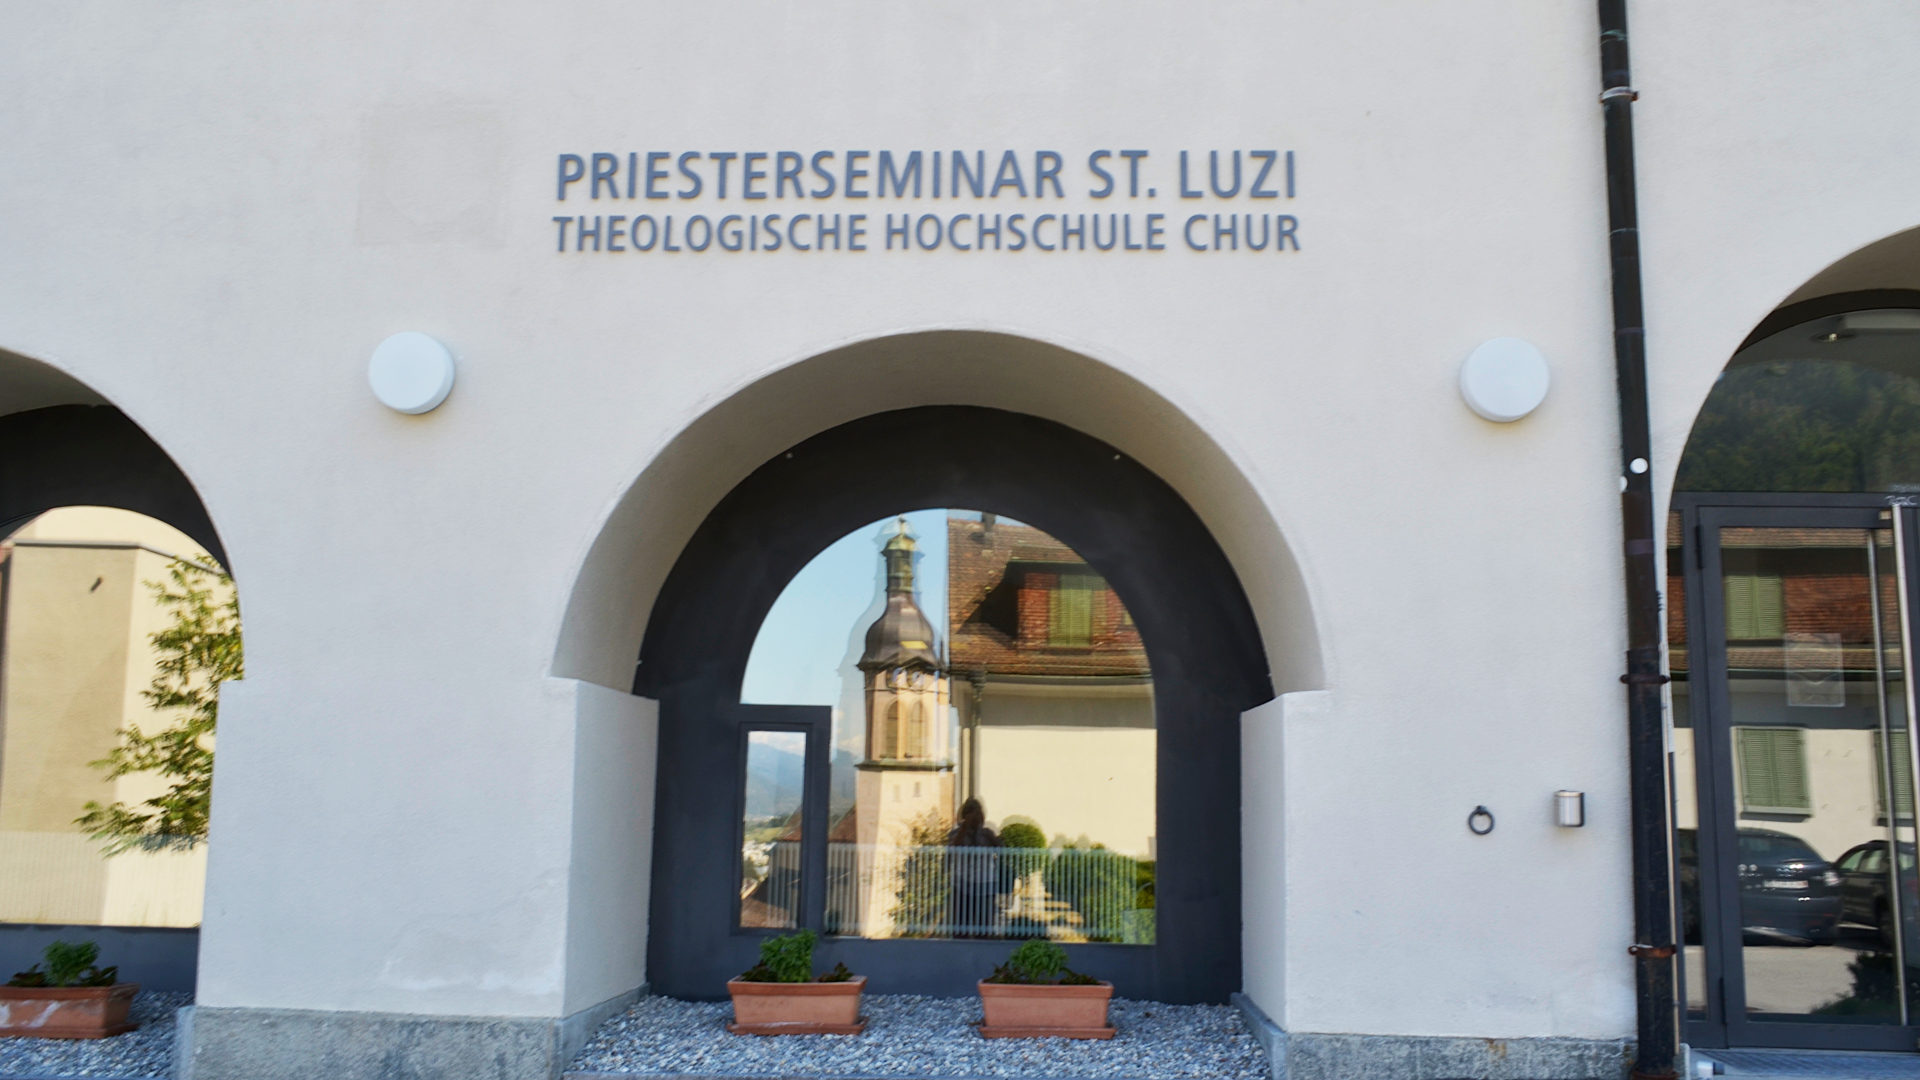 Priesterseminar St. Luzi, Chur